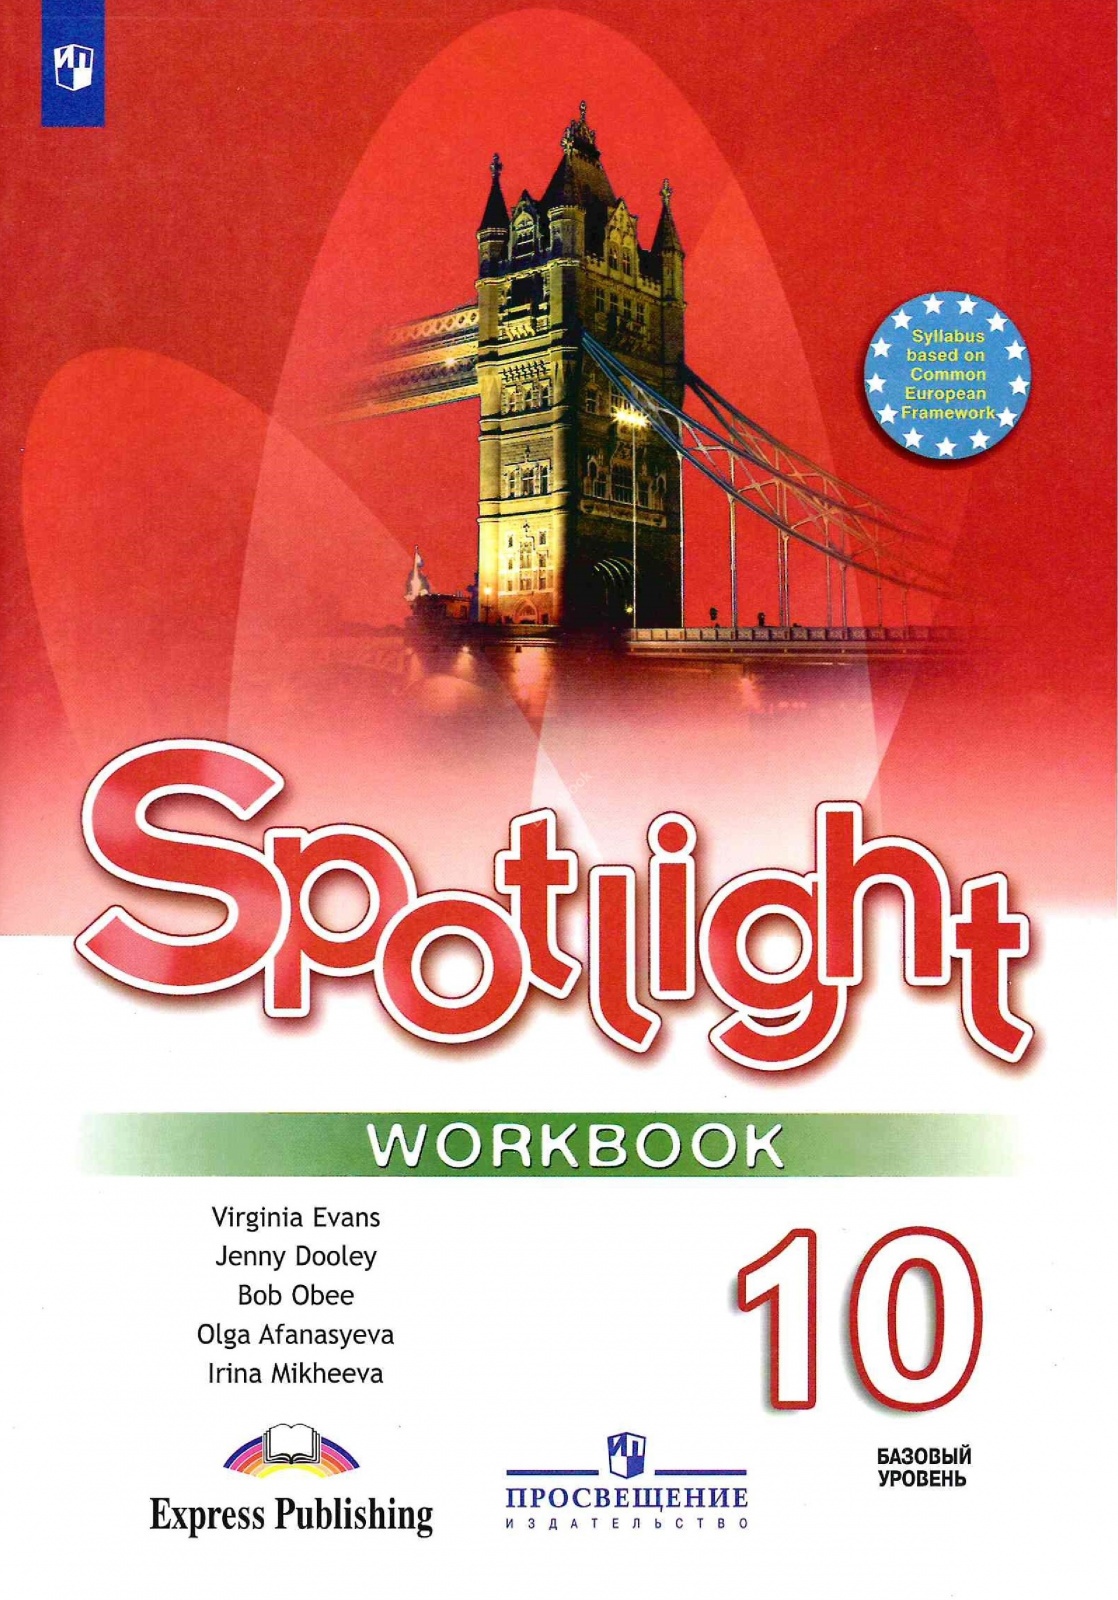 Английский 10 класс афанасьева 2020. Workbook Spotlight 5 класс ваулина. Spotlight 5 Workbook английский язык Эванс. Англ 5 класс рабочая тетрадь Spotlight. Тетради для английского языка 5 класс спотлайт.